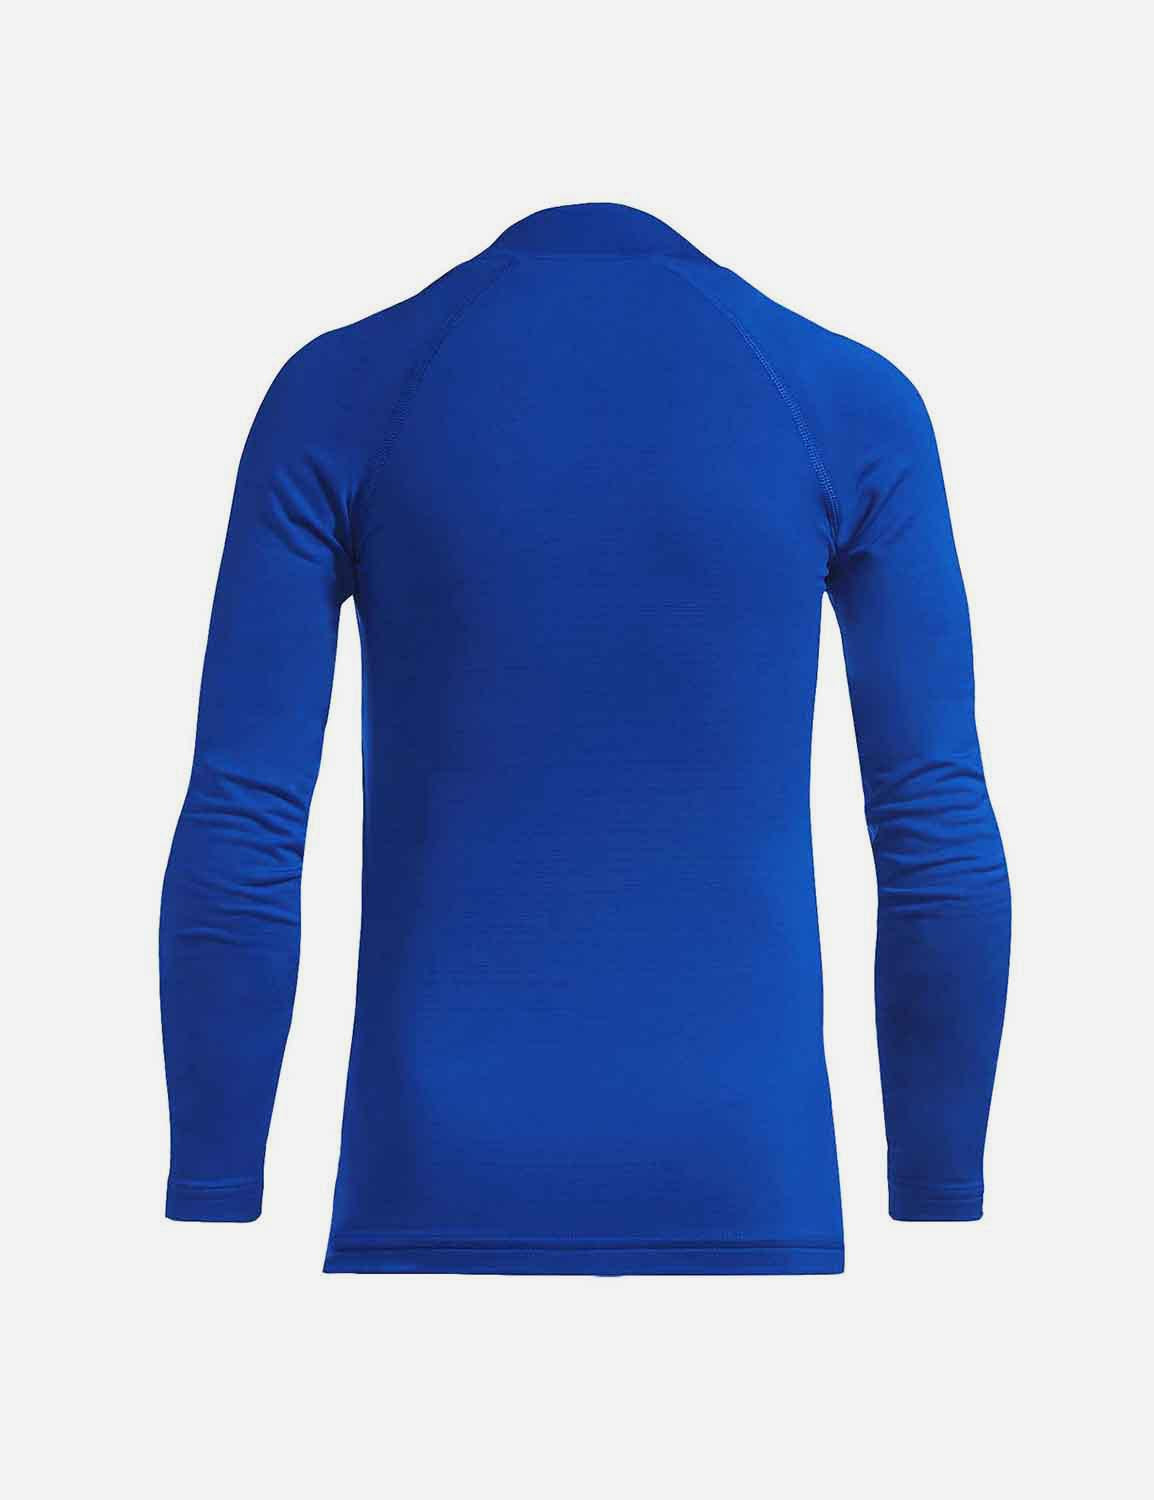 Baleaf Boys' Compression Baselayer Mock Neck Long Sleeve Top abd213 Royal Blue Back